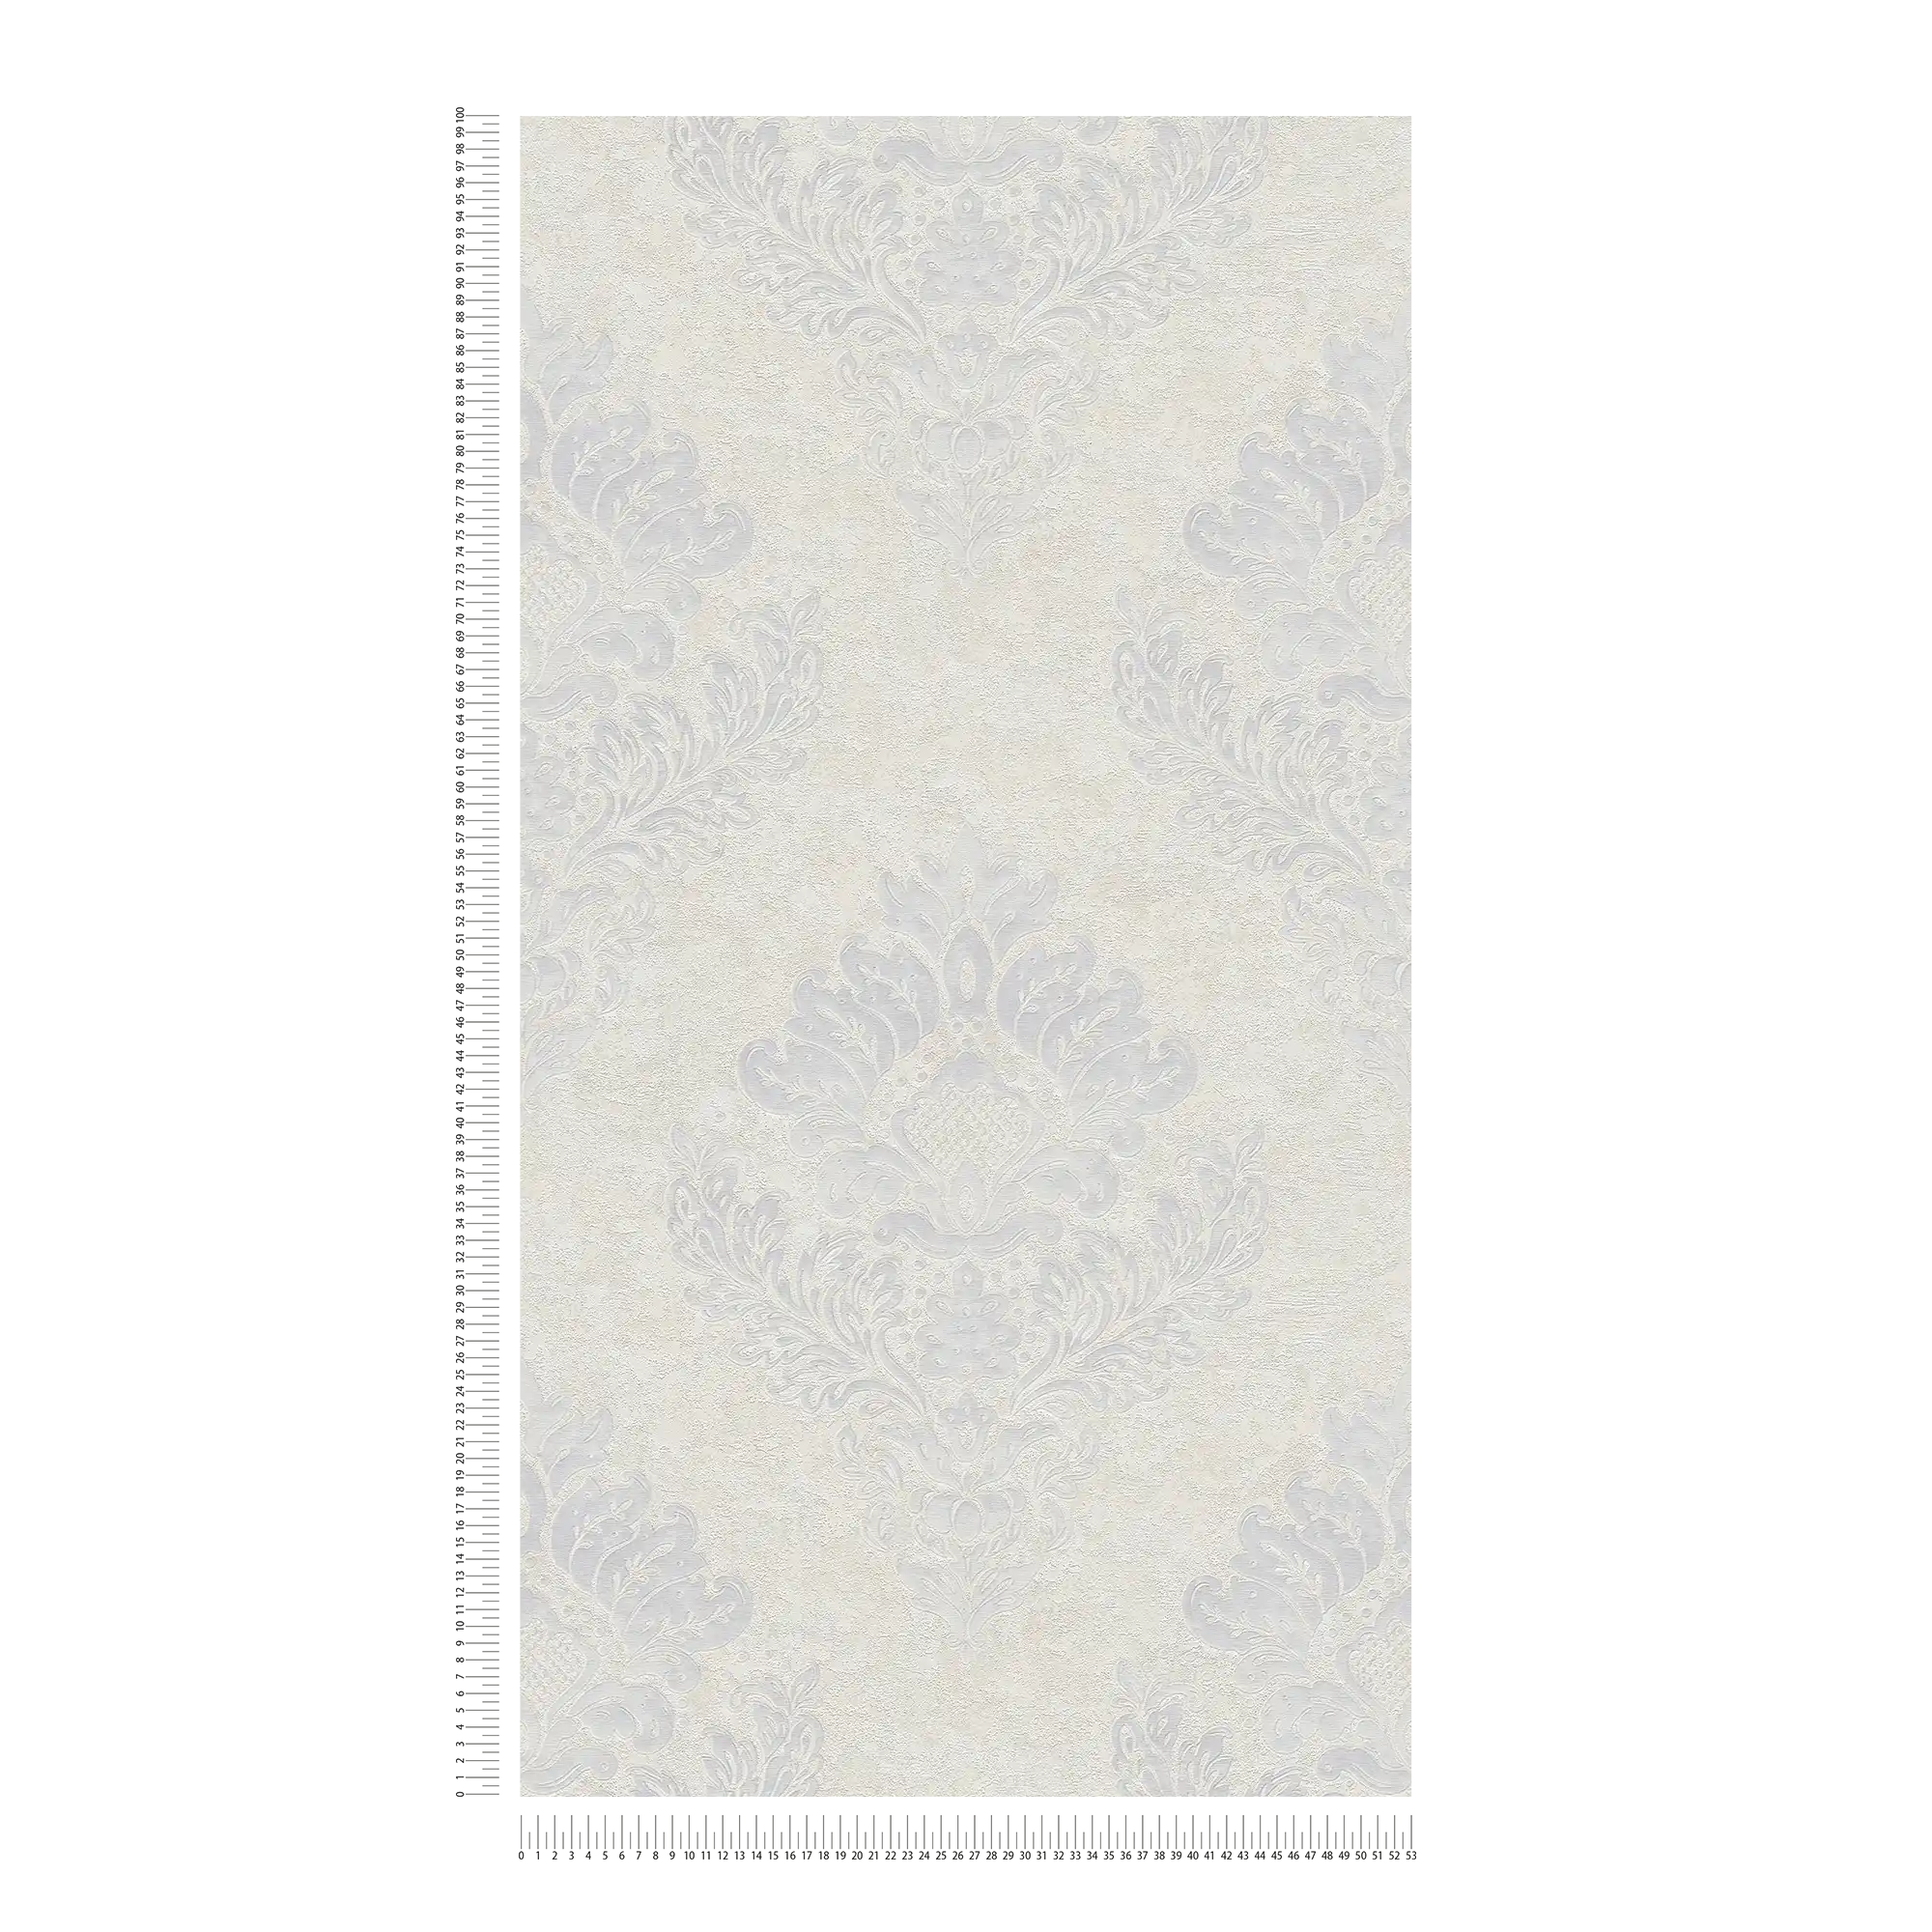             Vliestapete mit floralen Ornamenten & Metallic-Glanz – Beige, Grau, Weiß
        